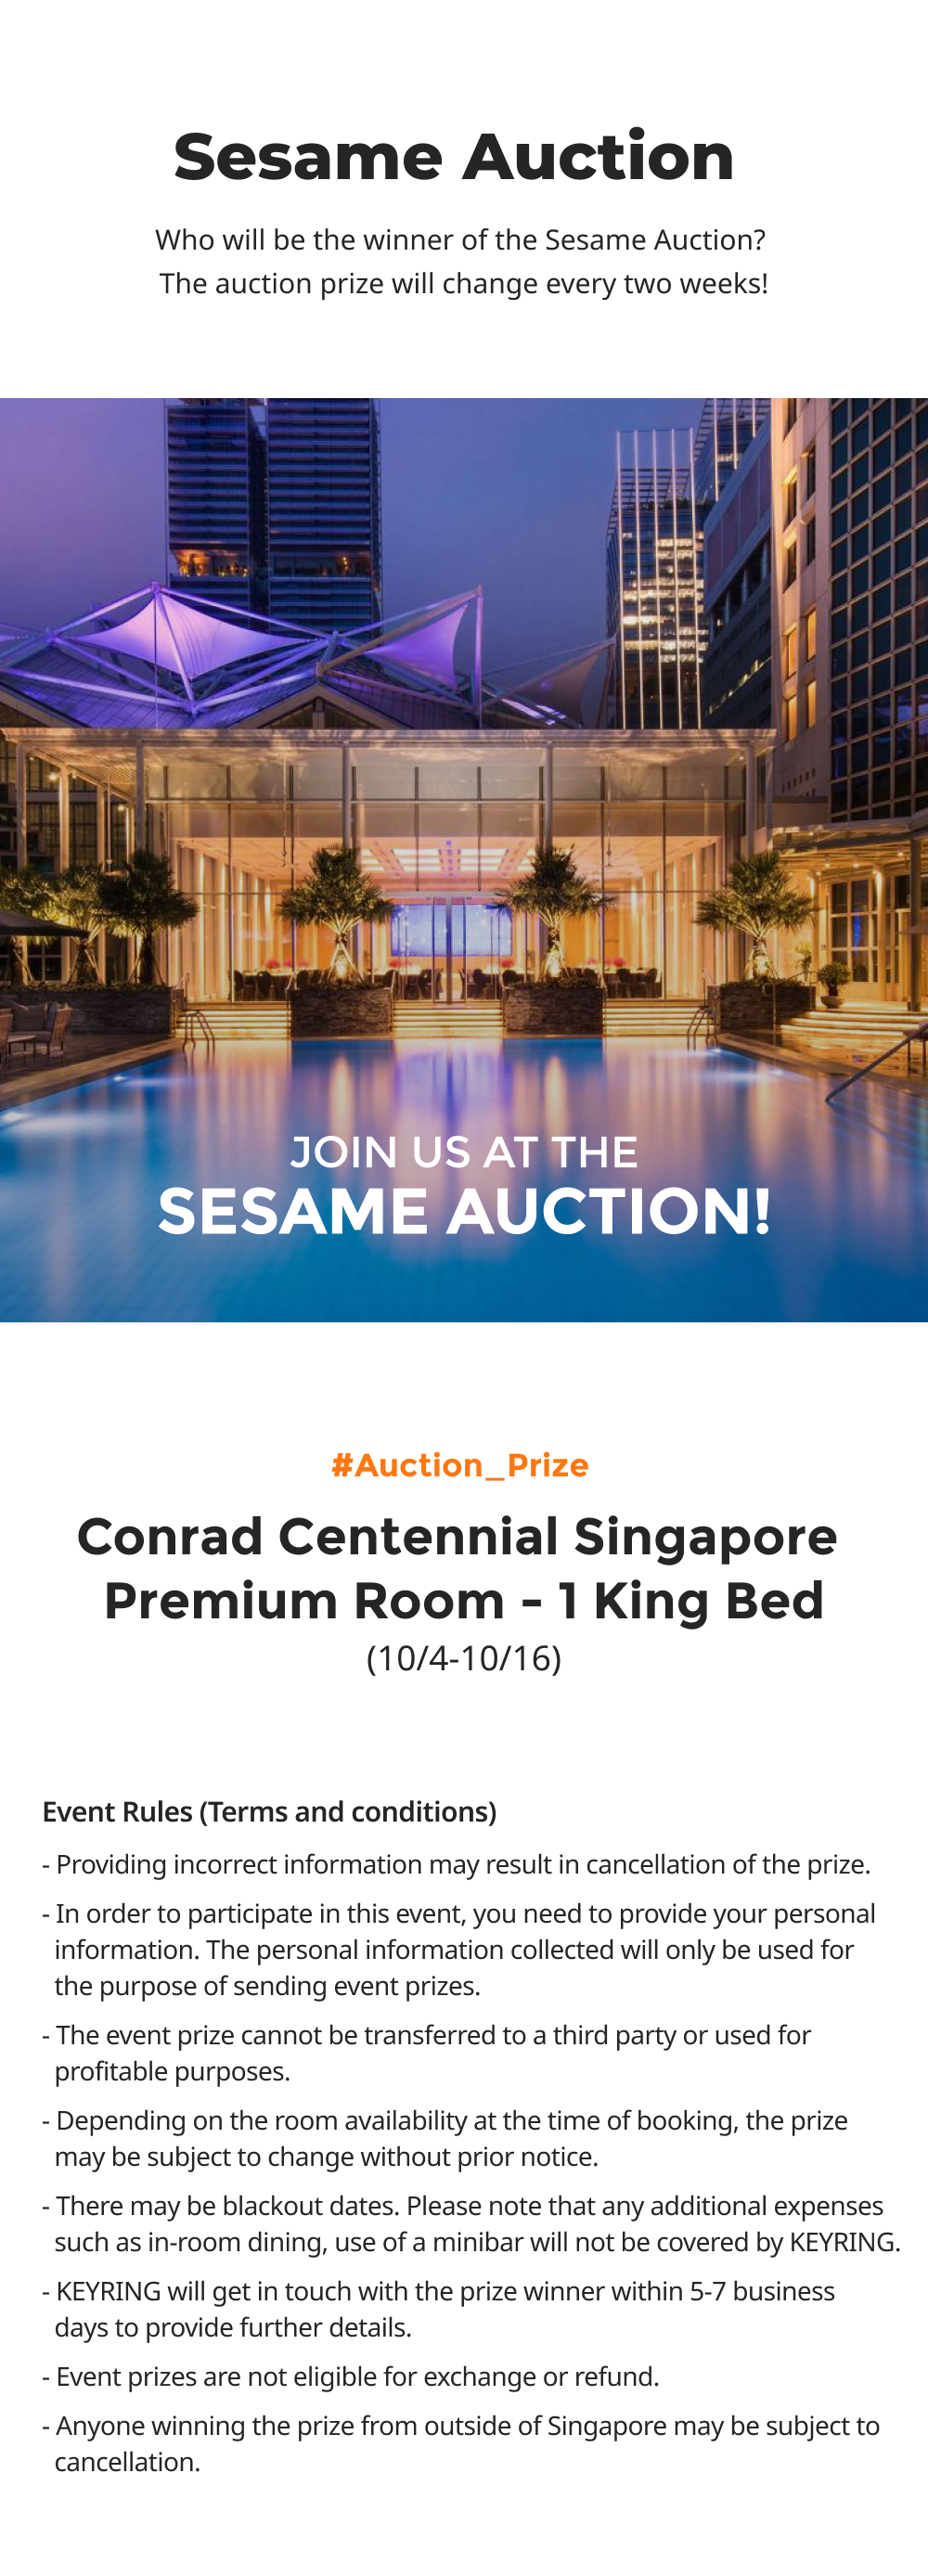 Singapore Sesame Auction Prize - Conrad Centennial